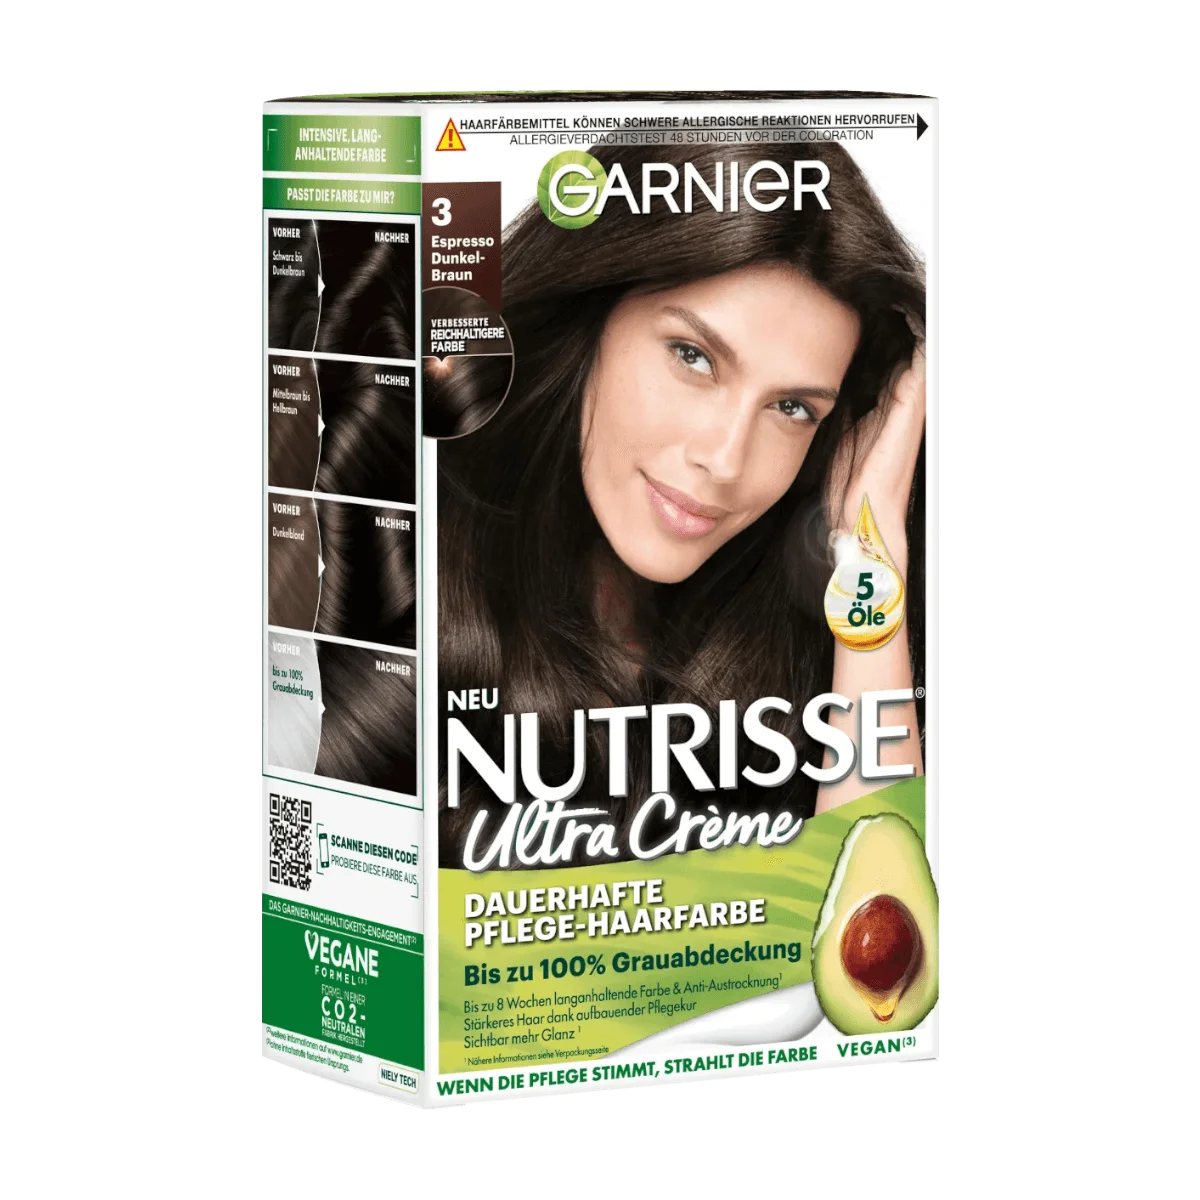 Garnier Nutrisse Ultra Creme Haarfarbe 3 Espresso Dunkelbraun, 1 Stk